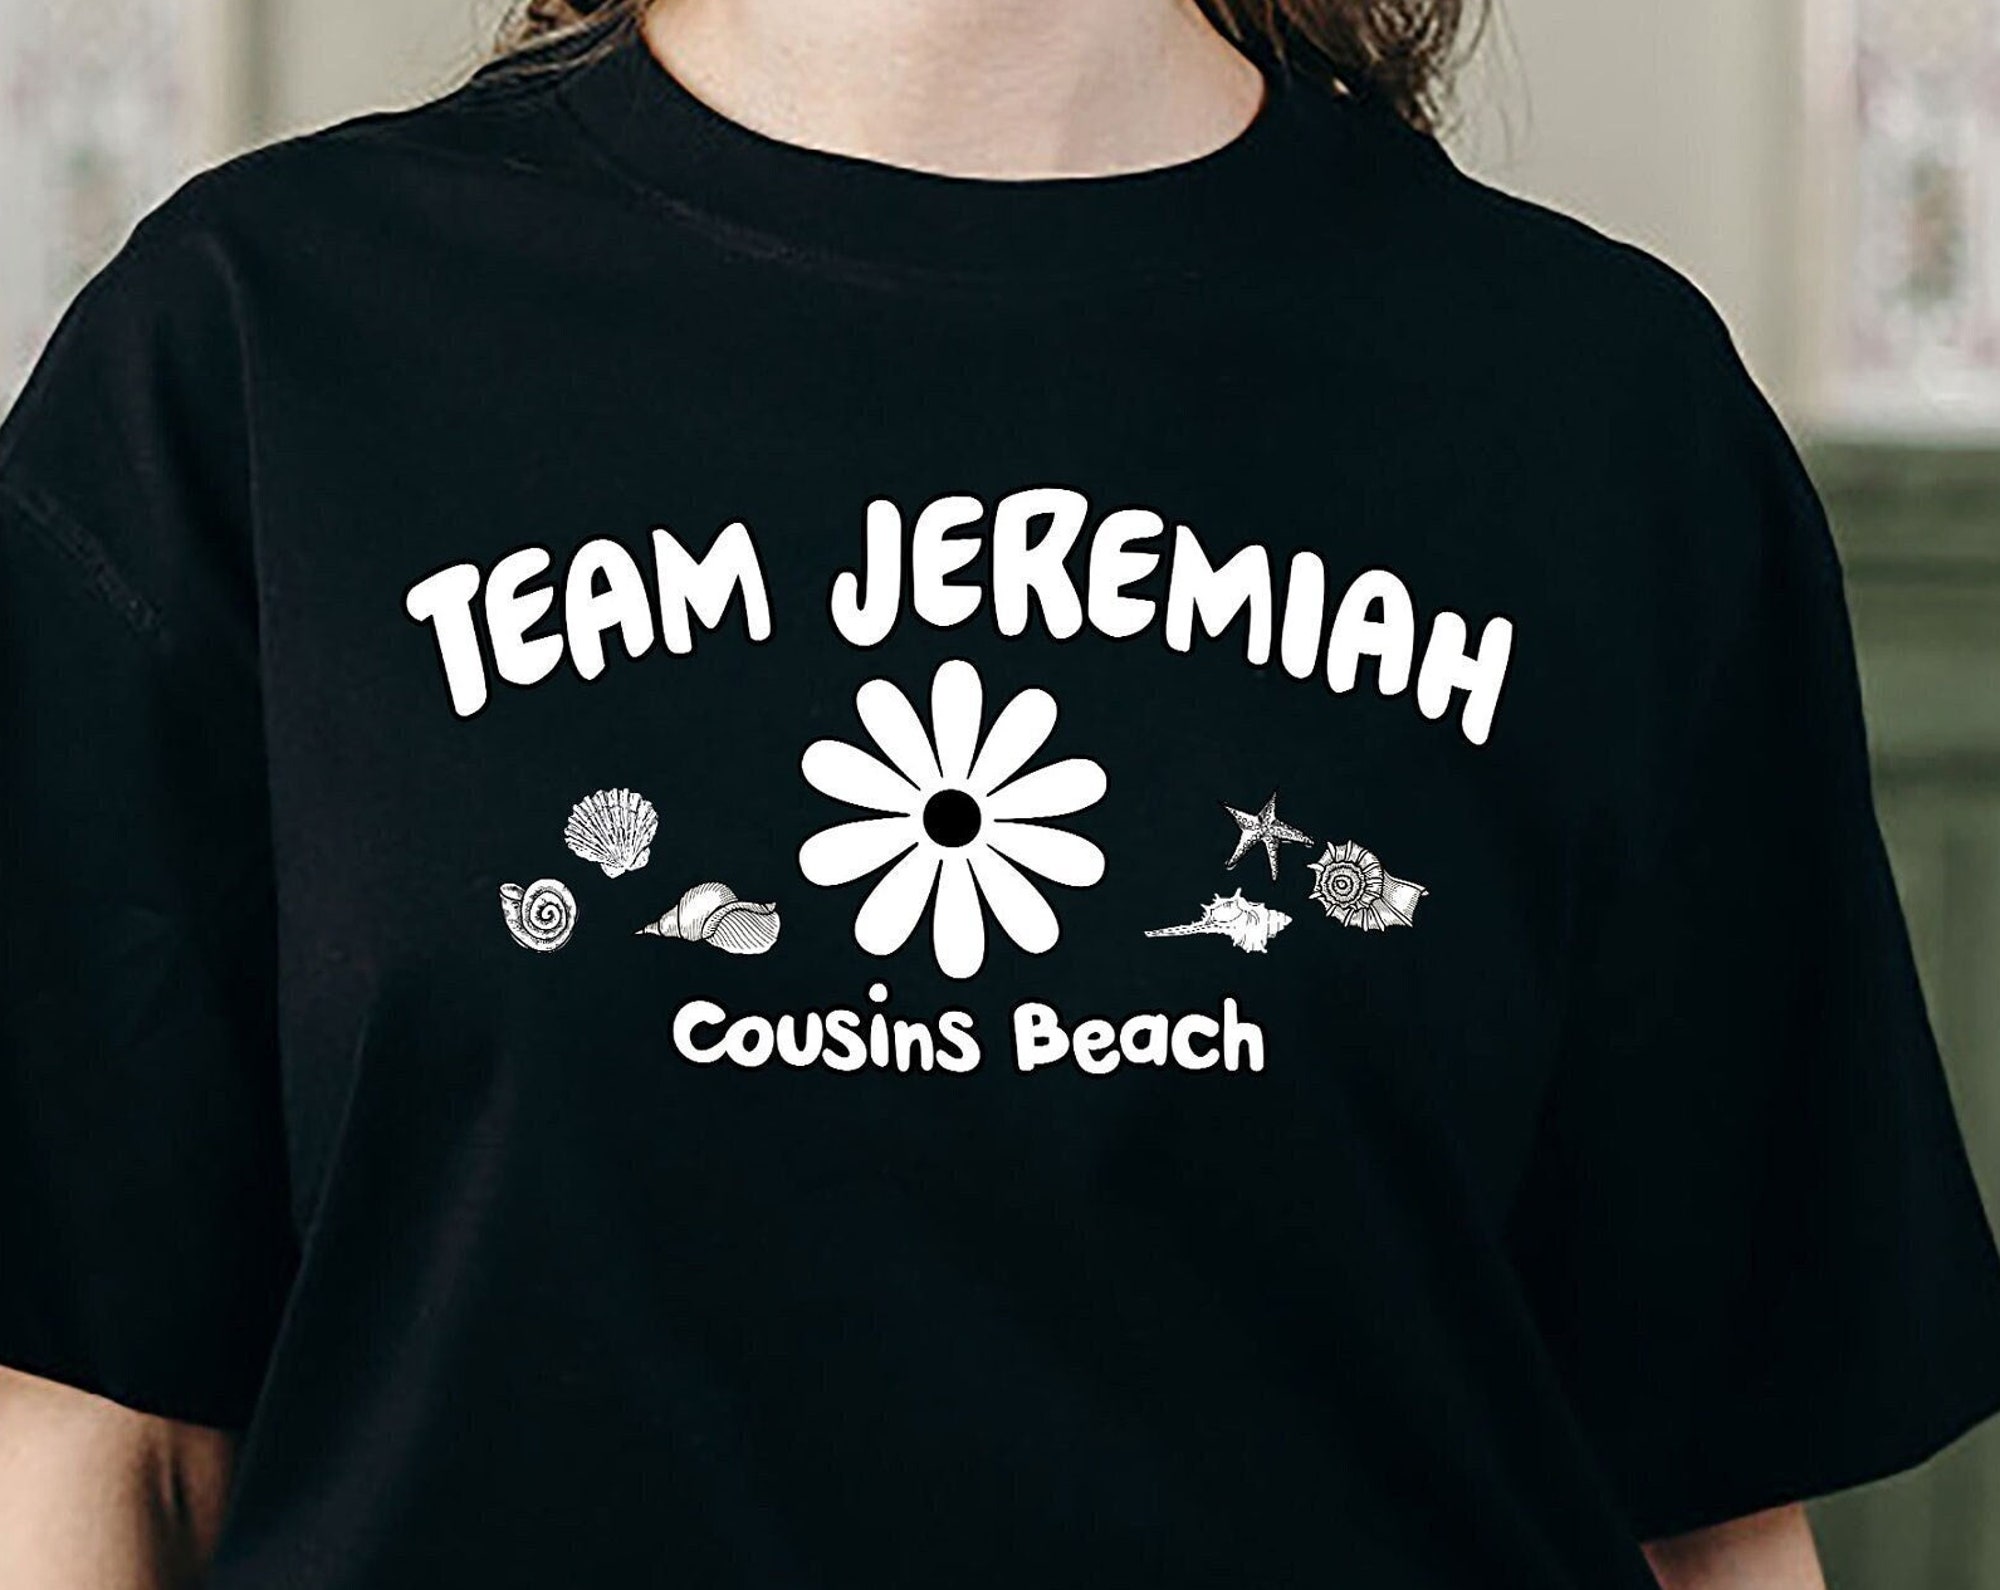 Discover Team Jeremial shirt, Summer Team Jeremiah shirt